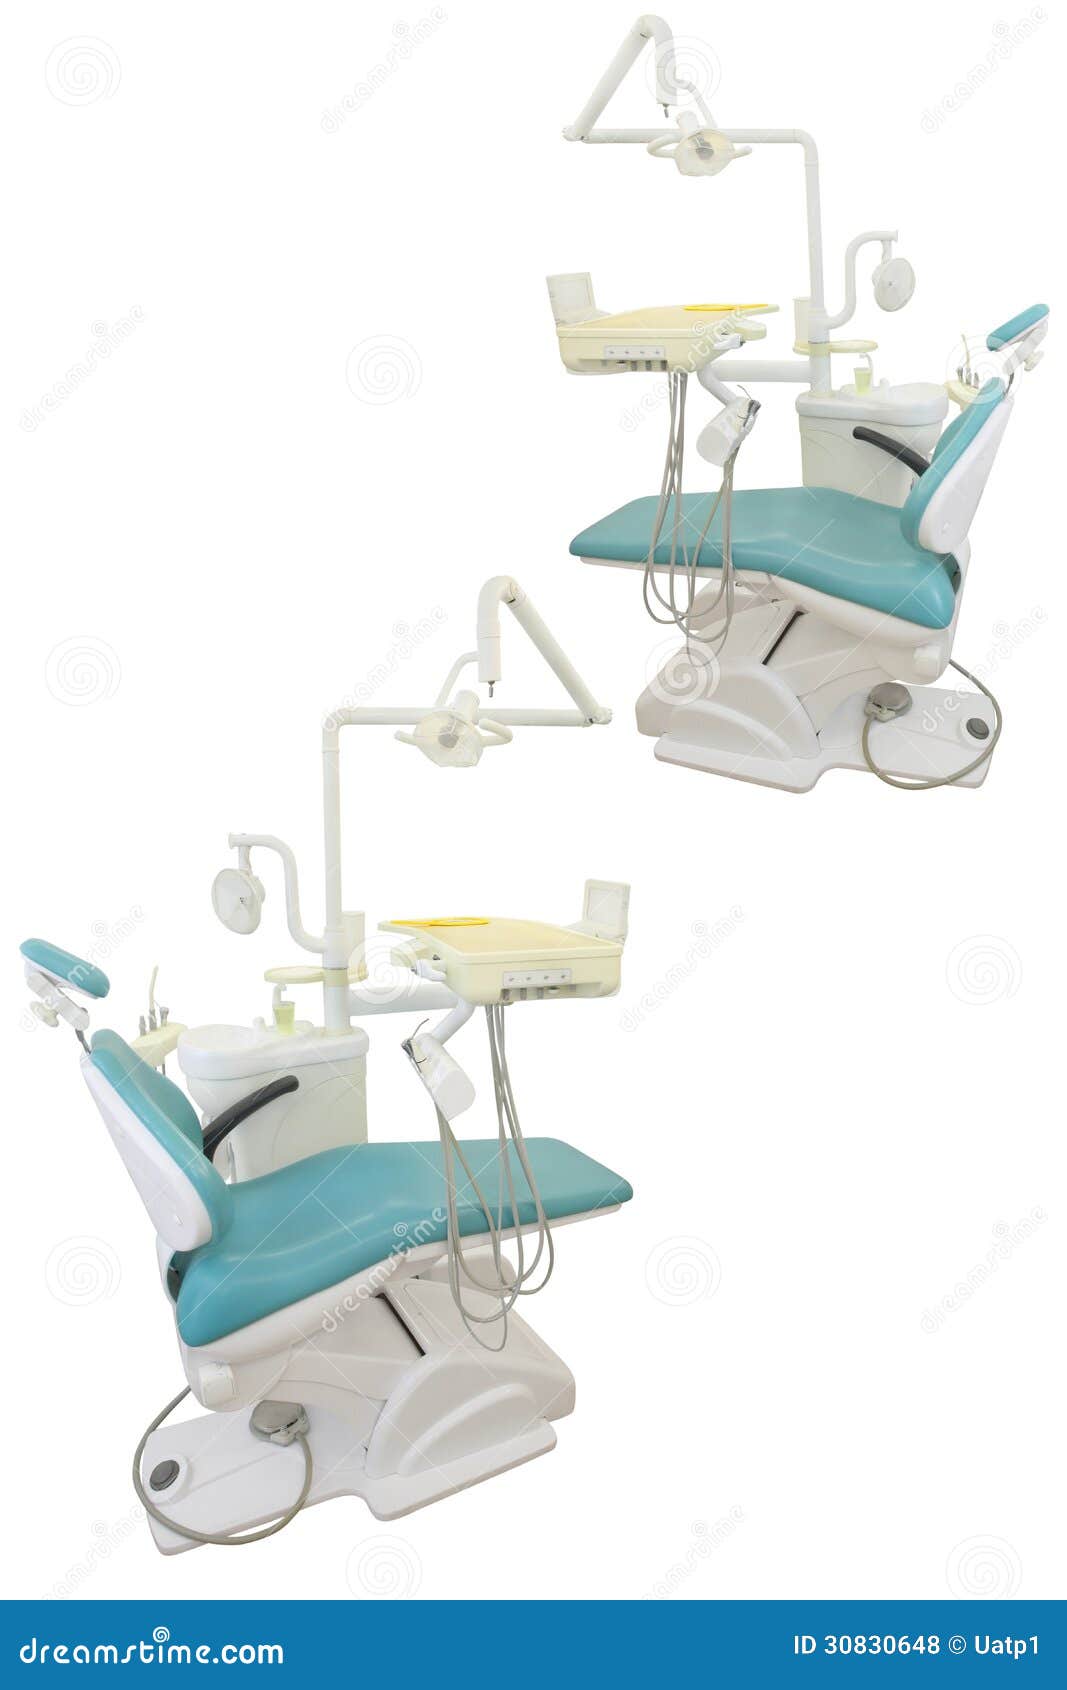 L'immagine della sedia dentaria